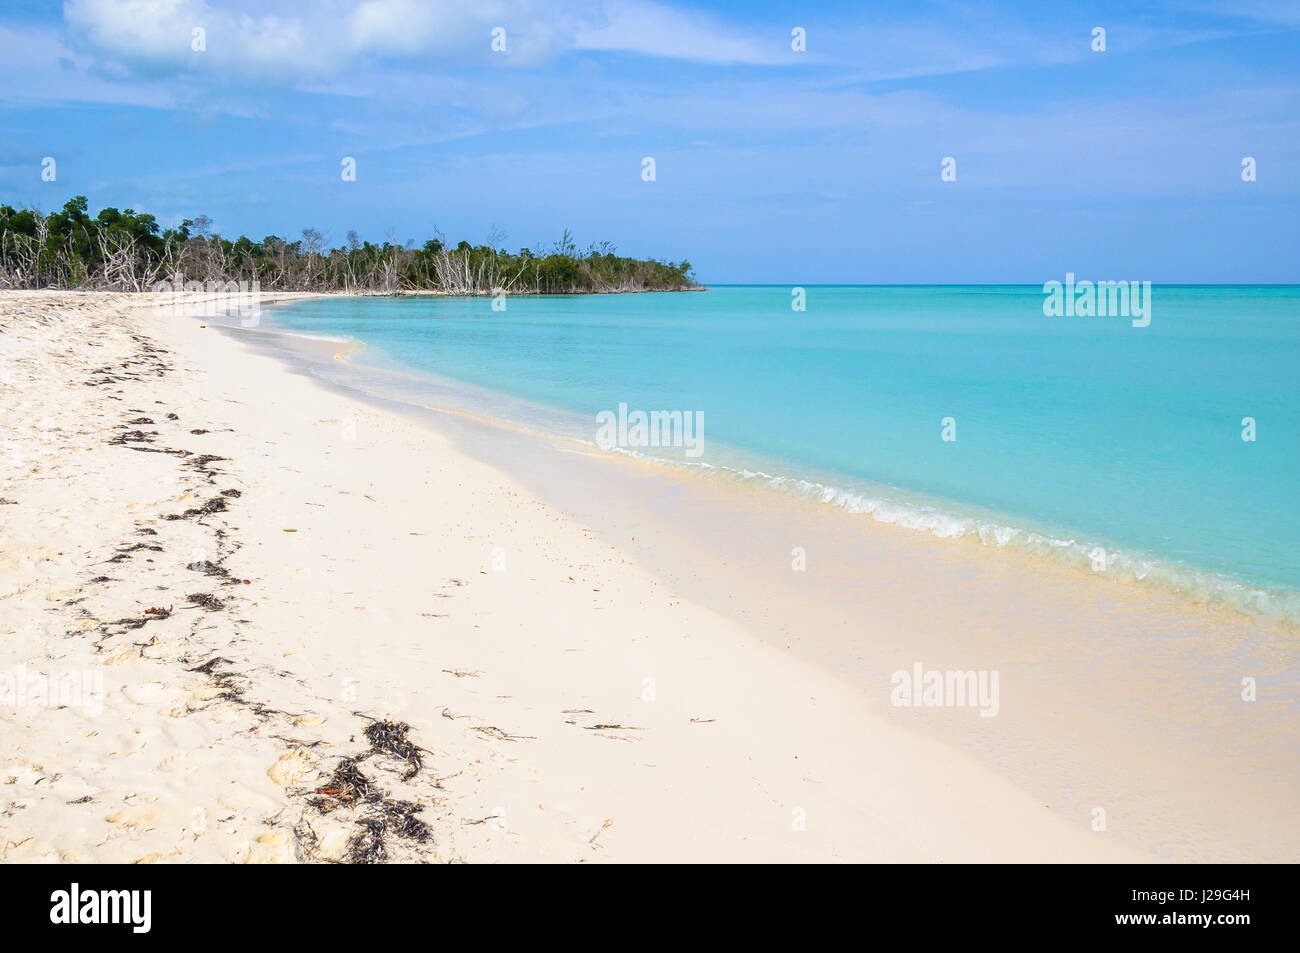 Da solo in una zona appartata spiaggia di sabbia bianca nel tropical Cayo Levisa isola di Cuba Foto Stock